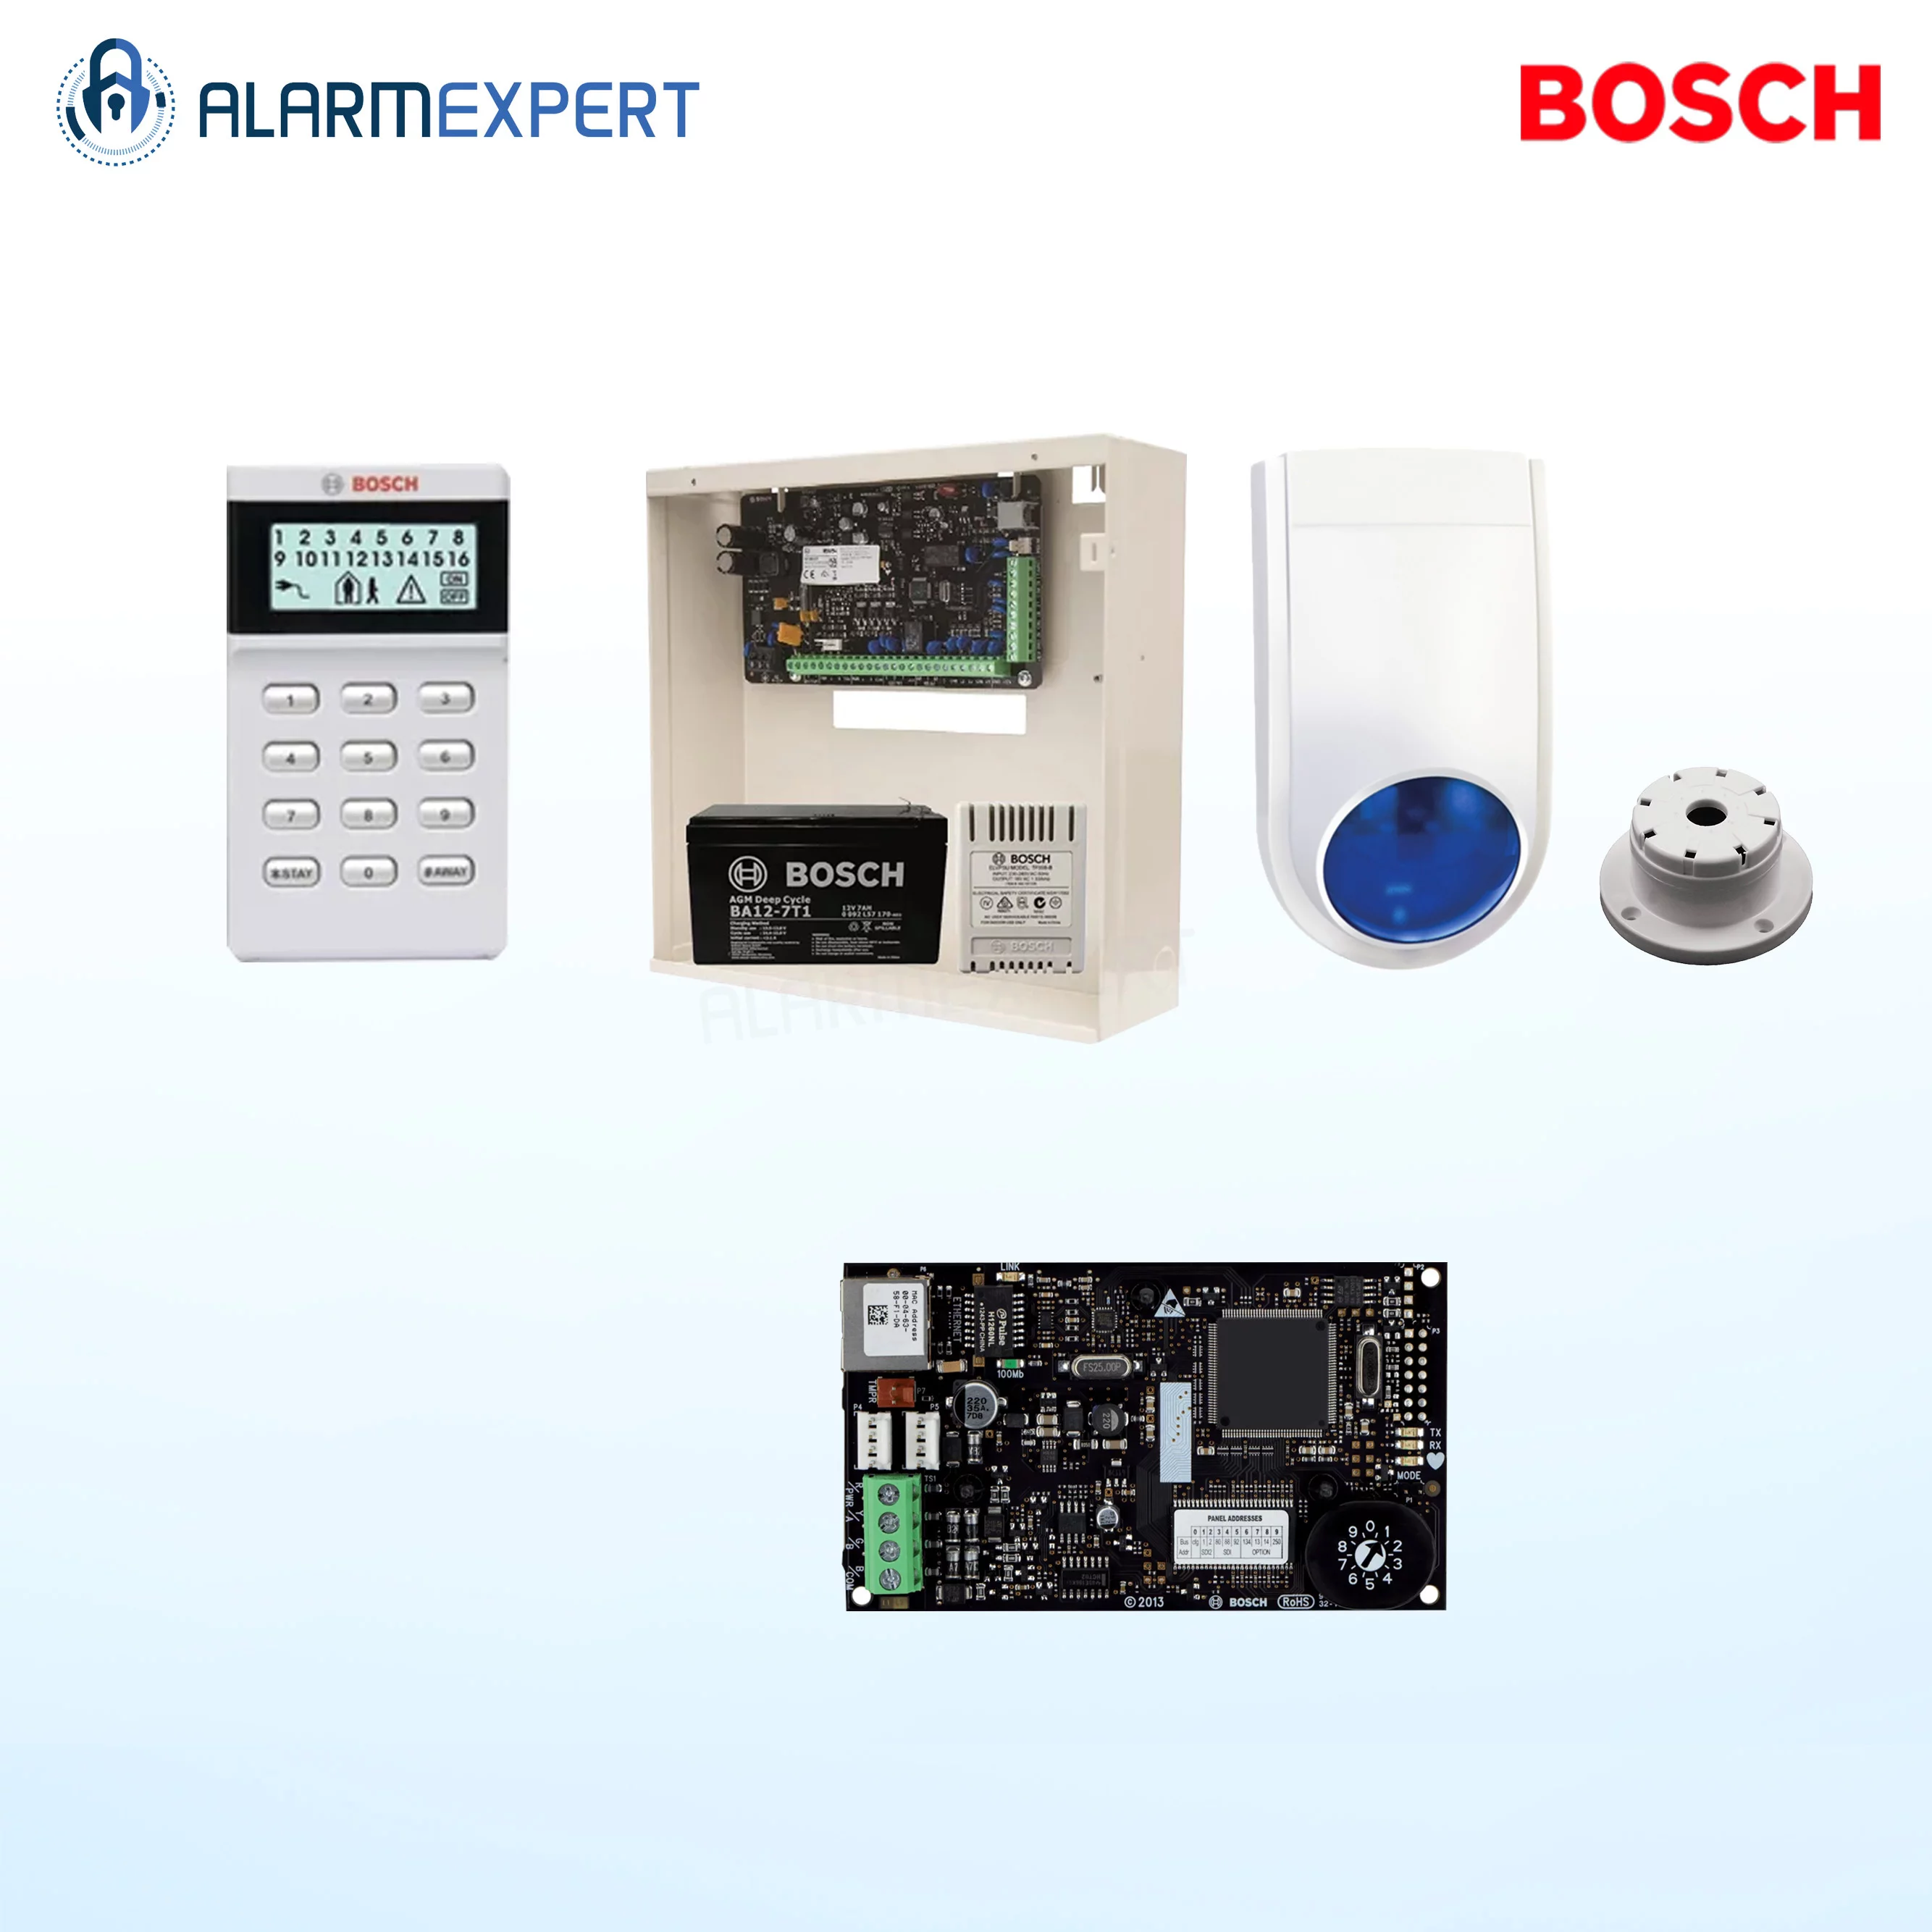 Bosch Solution 2000 IP + Icon Keypad + No Detector